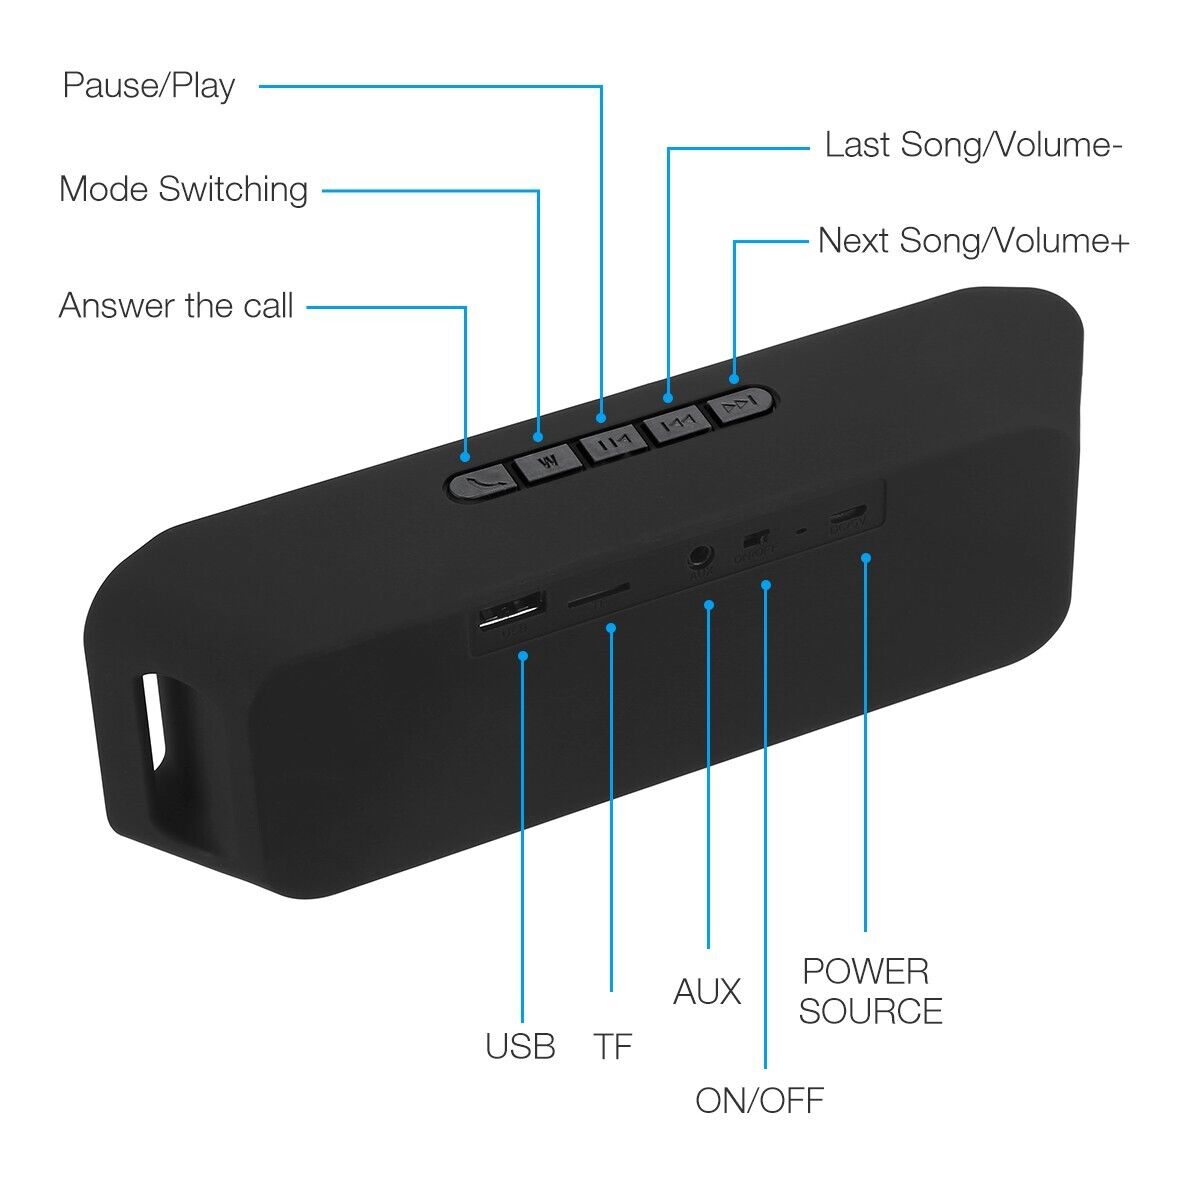 Waterproof Bluetooth Speaker Wireless Stereo Bass